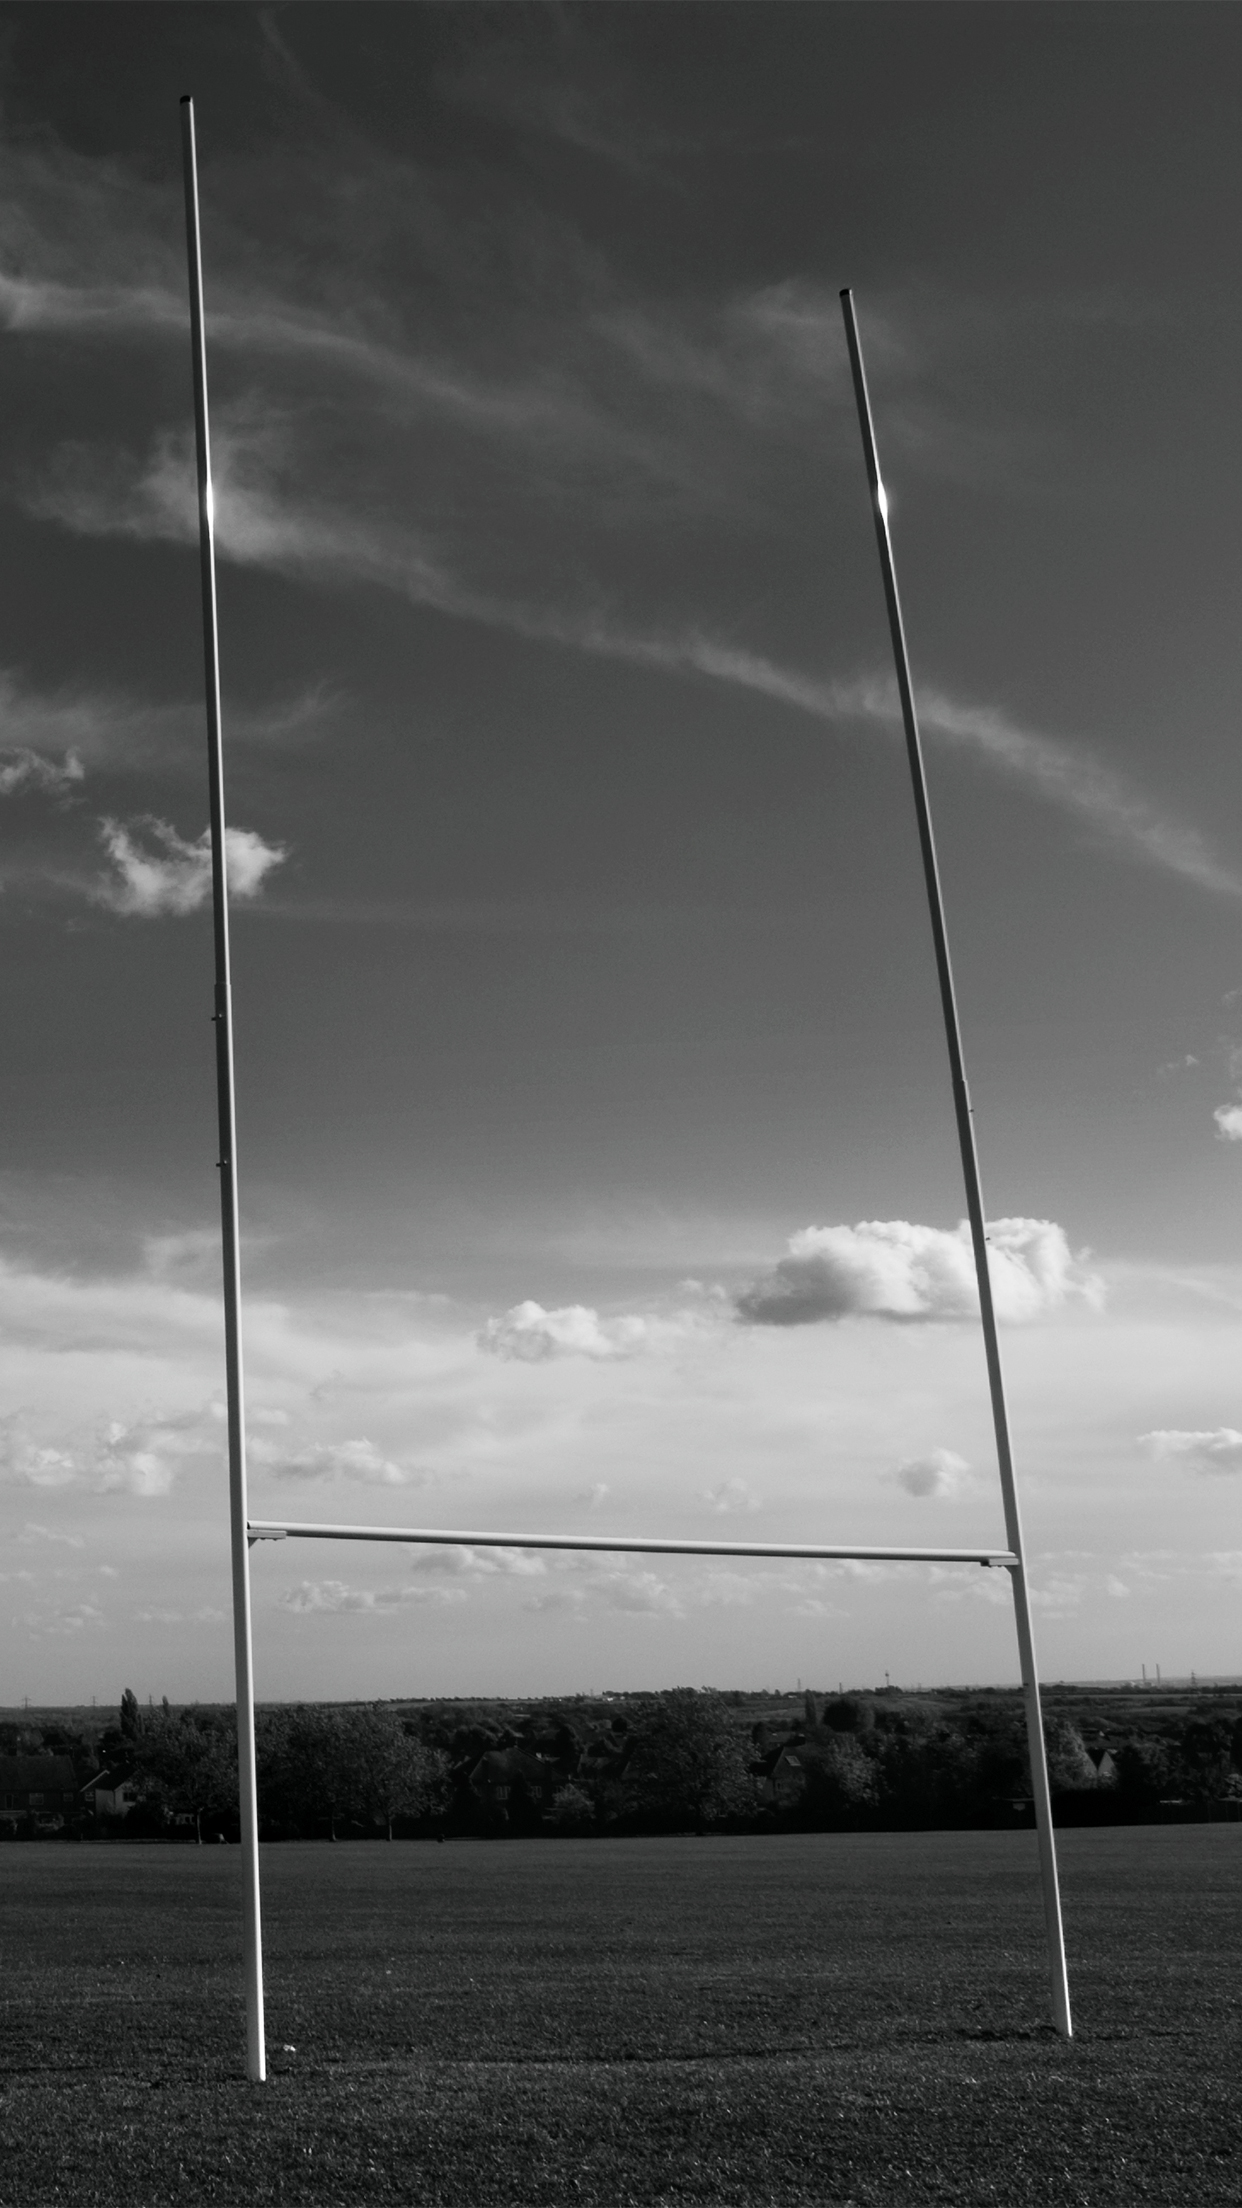 fond d'écran rugby iphone,ciel,noir,photographie monochrome,noir et blanc,nuage